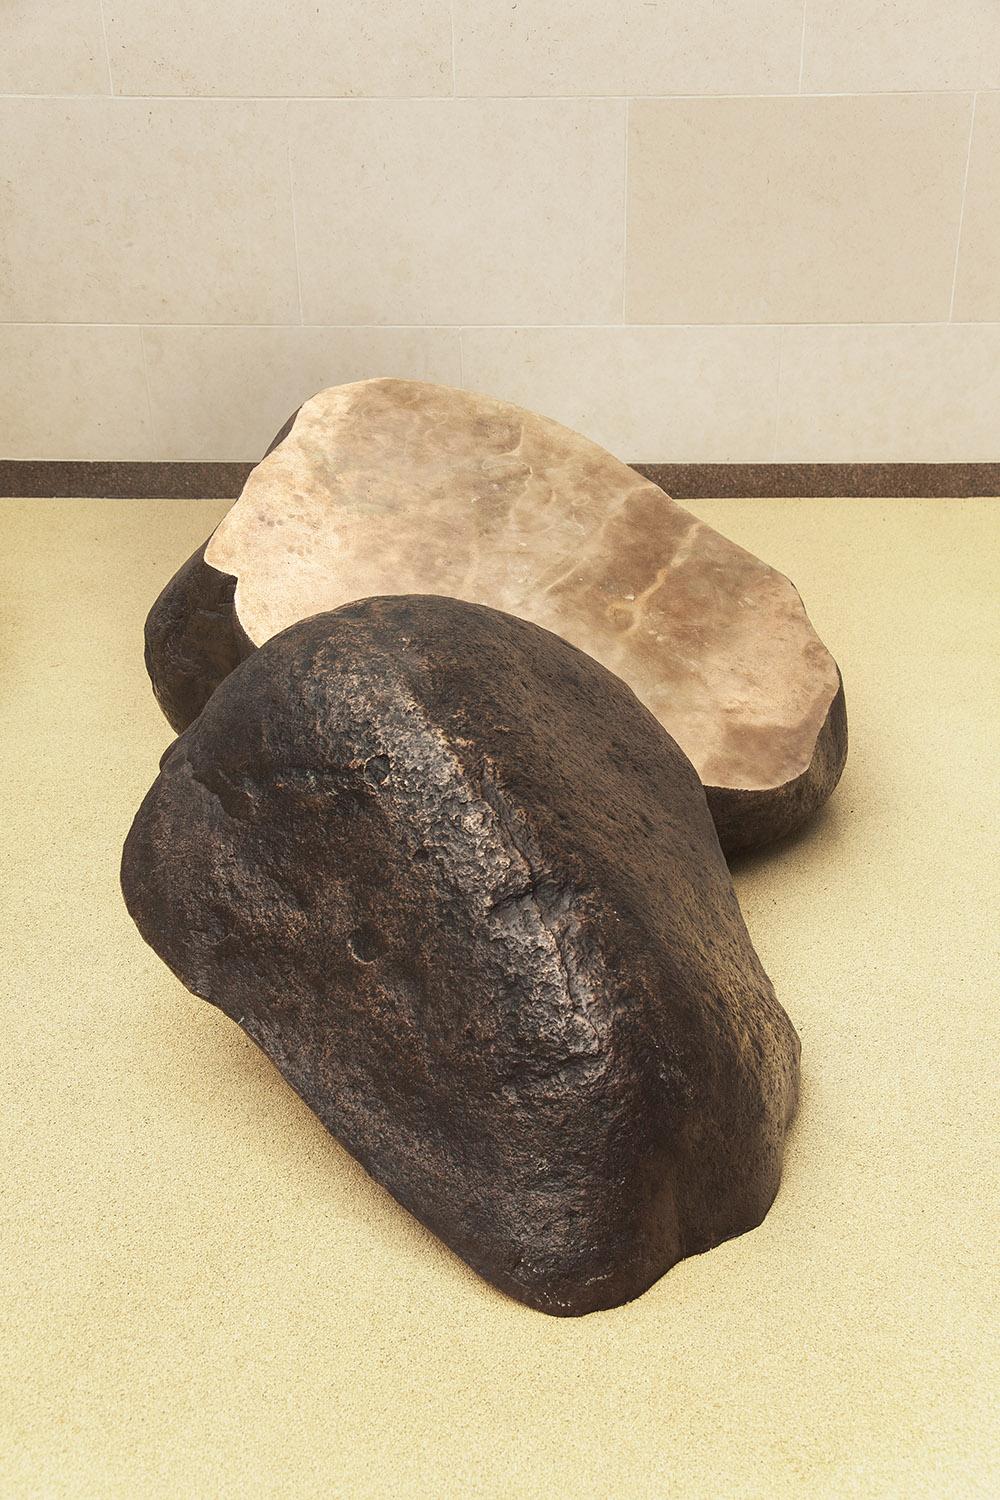 Boulder #2 - The Slide ist eine Bronzeskulptur des zeitgenössischen Künstlers Tom Price mit den Maßen 85 × 200 × 130 cm (33,5 × 78,7 × 51,2 in). 
Dieses Kunstwerk ist als Auftragsarbeit erhältlich. Sie wird auf der gleichen Grundlage wie in den